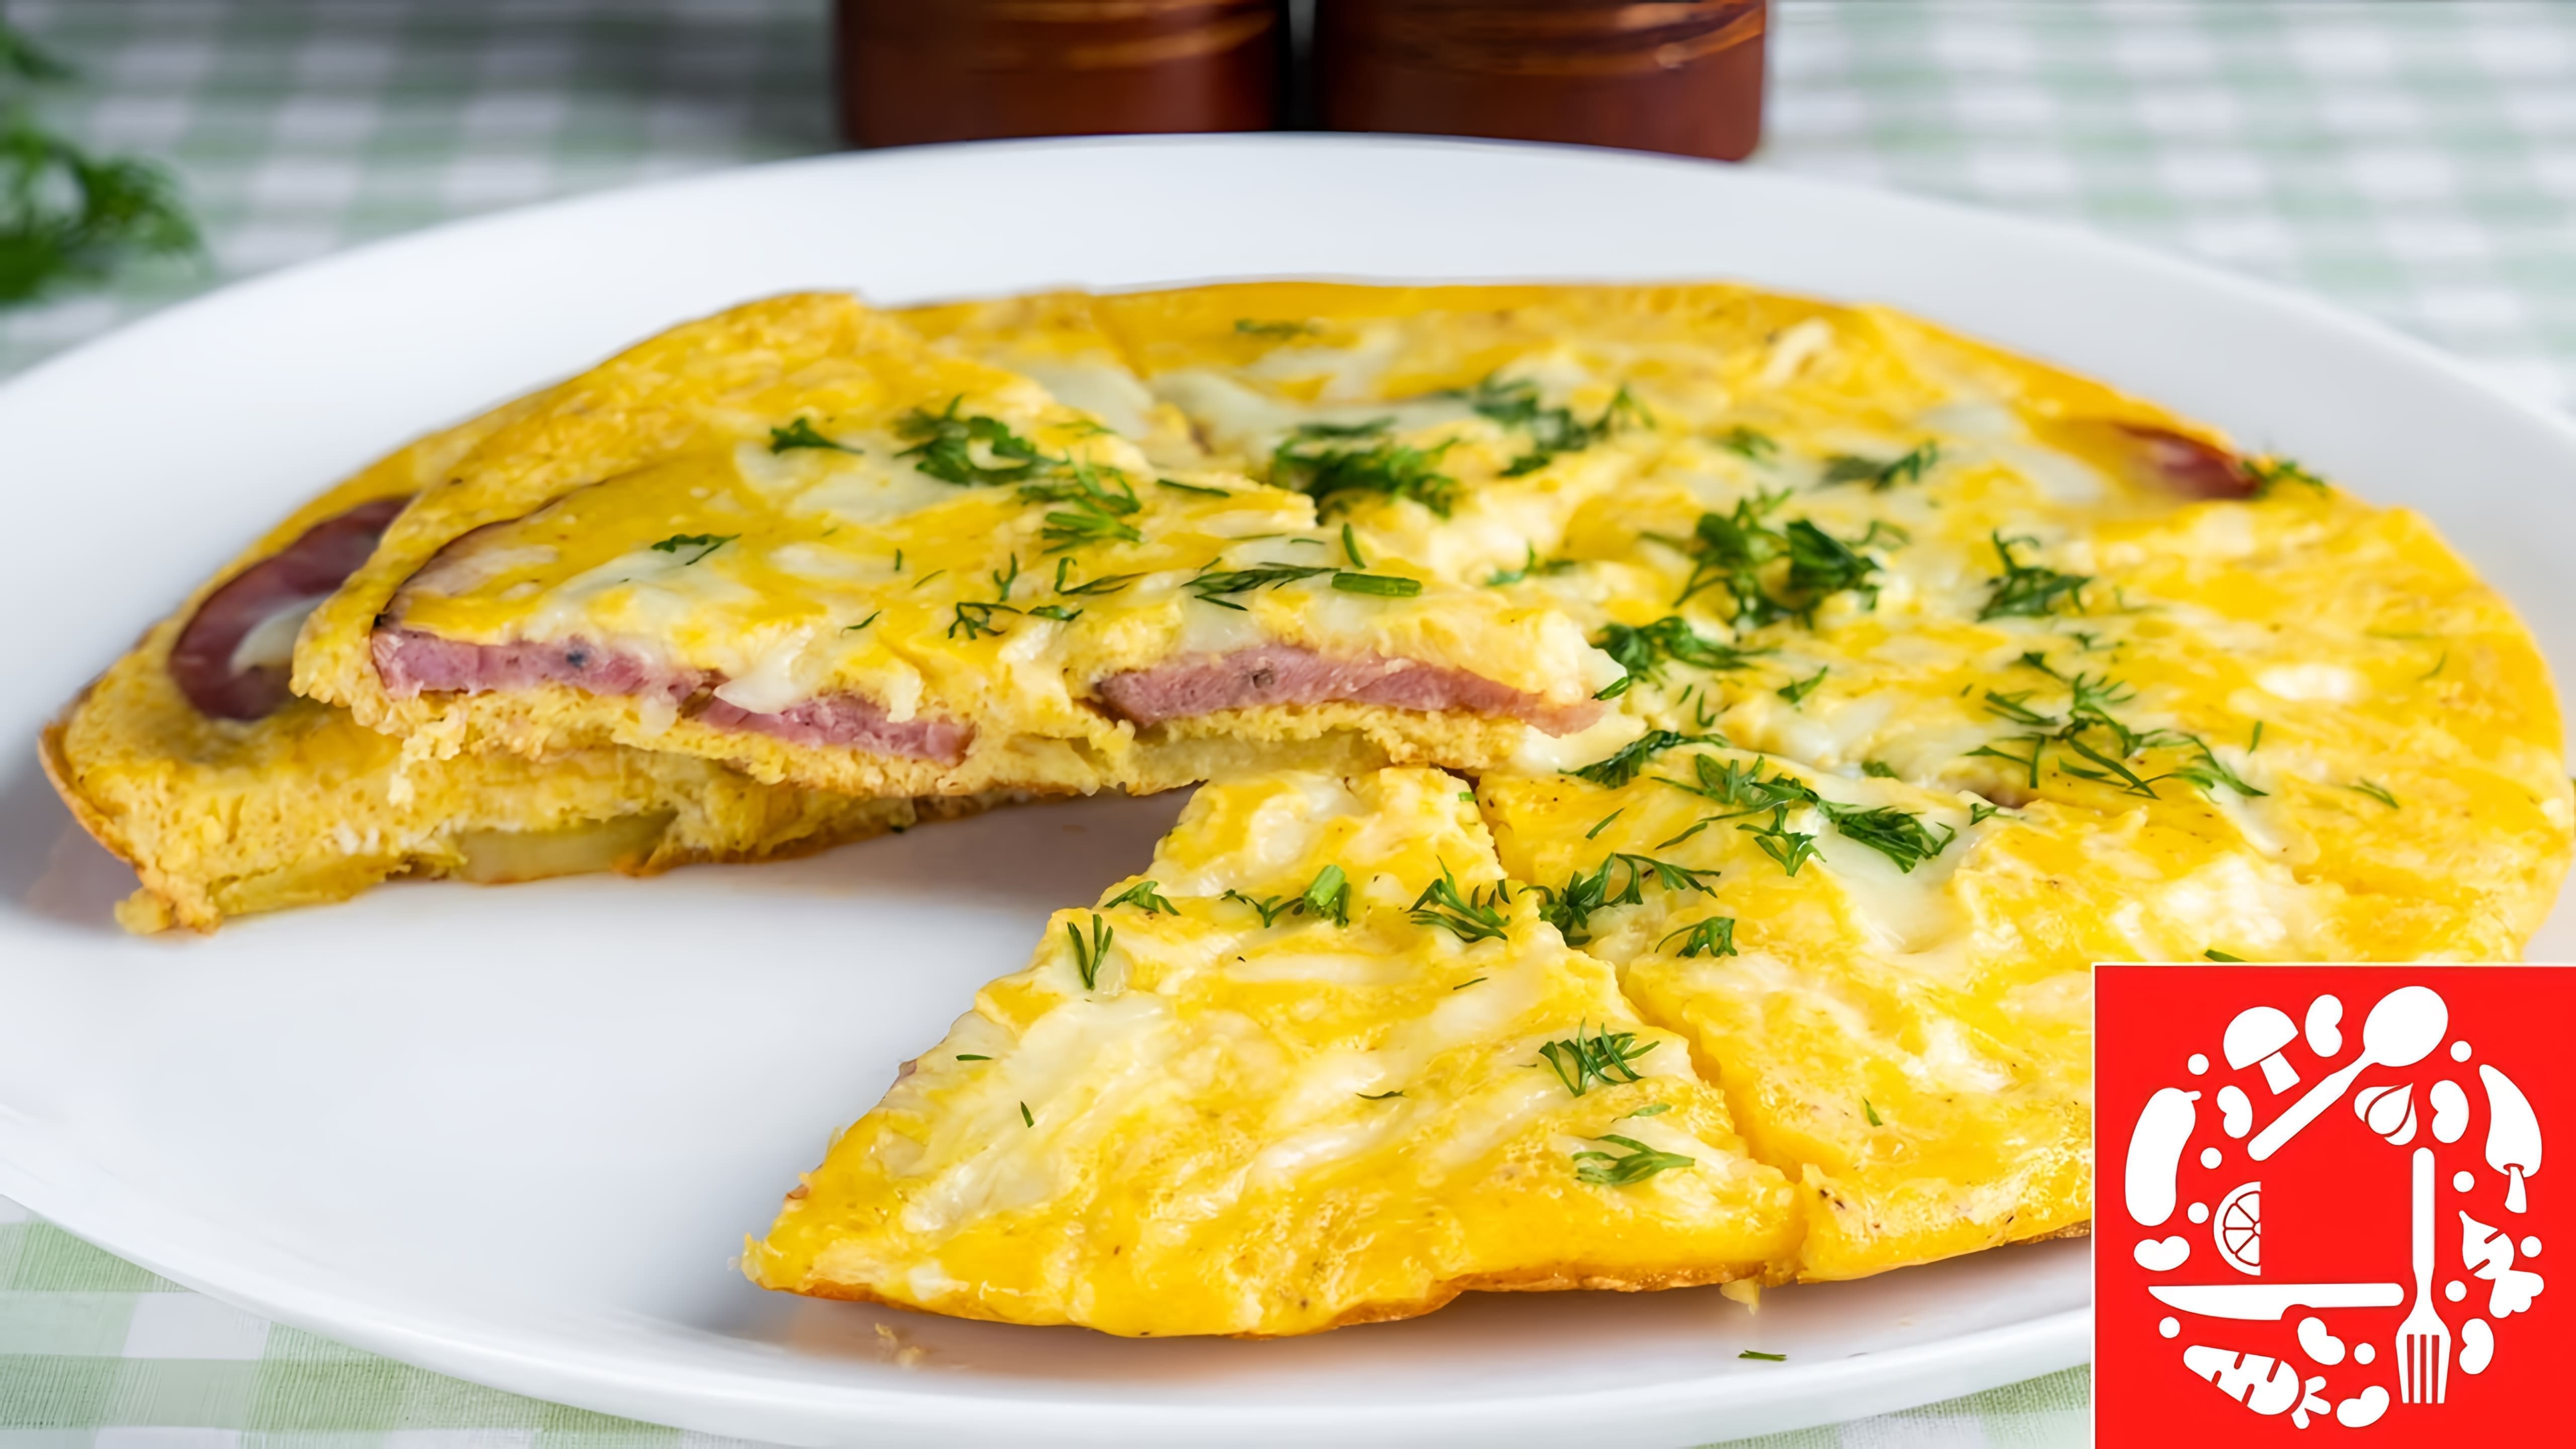 В этом видео демонстрируется рецепт простого и вкусного завтрака из яиц с картошкой